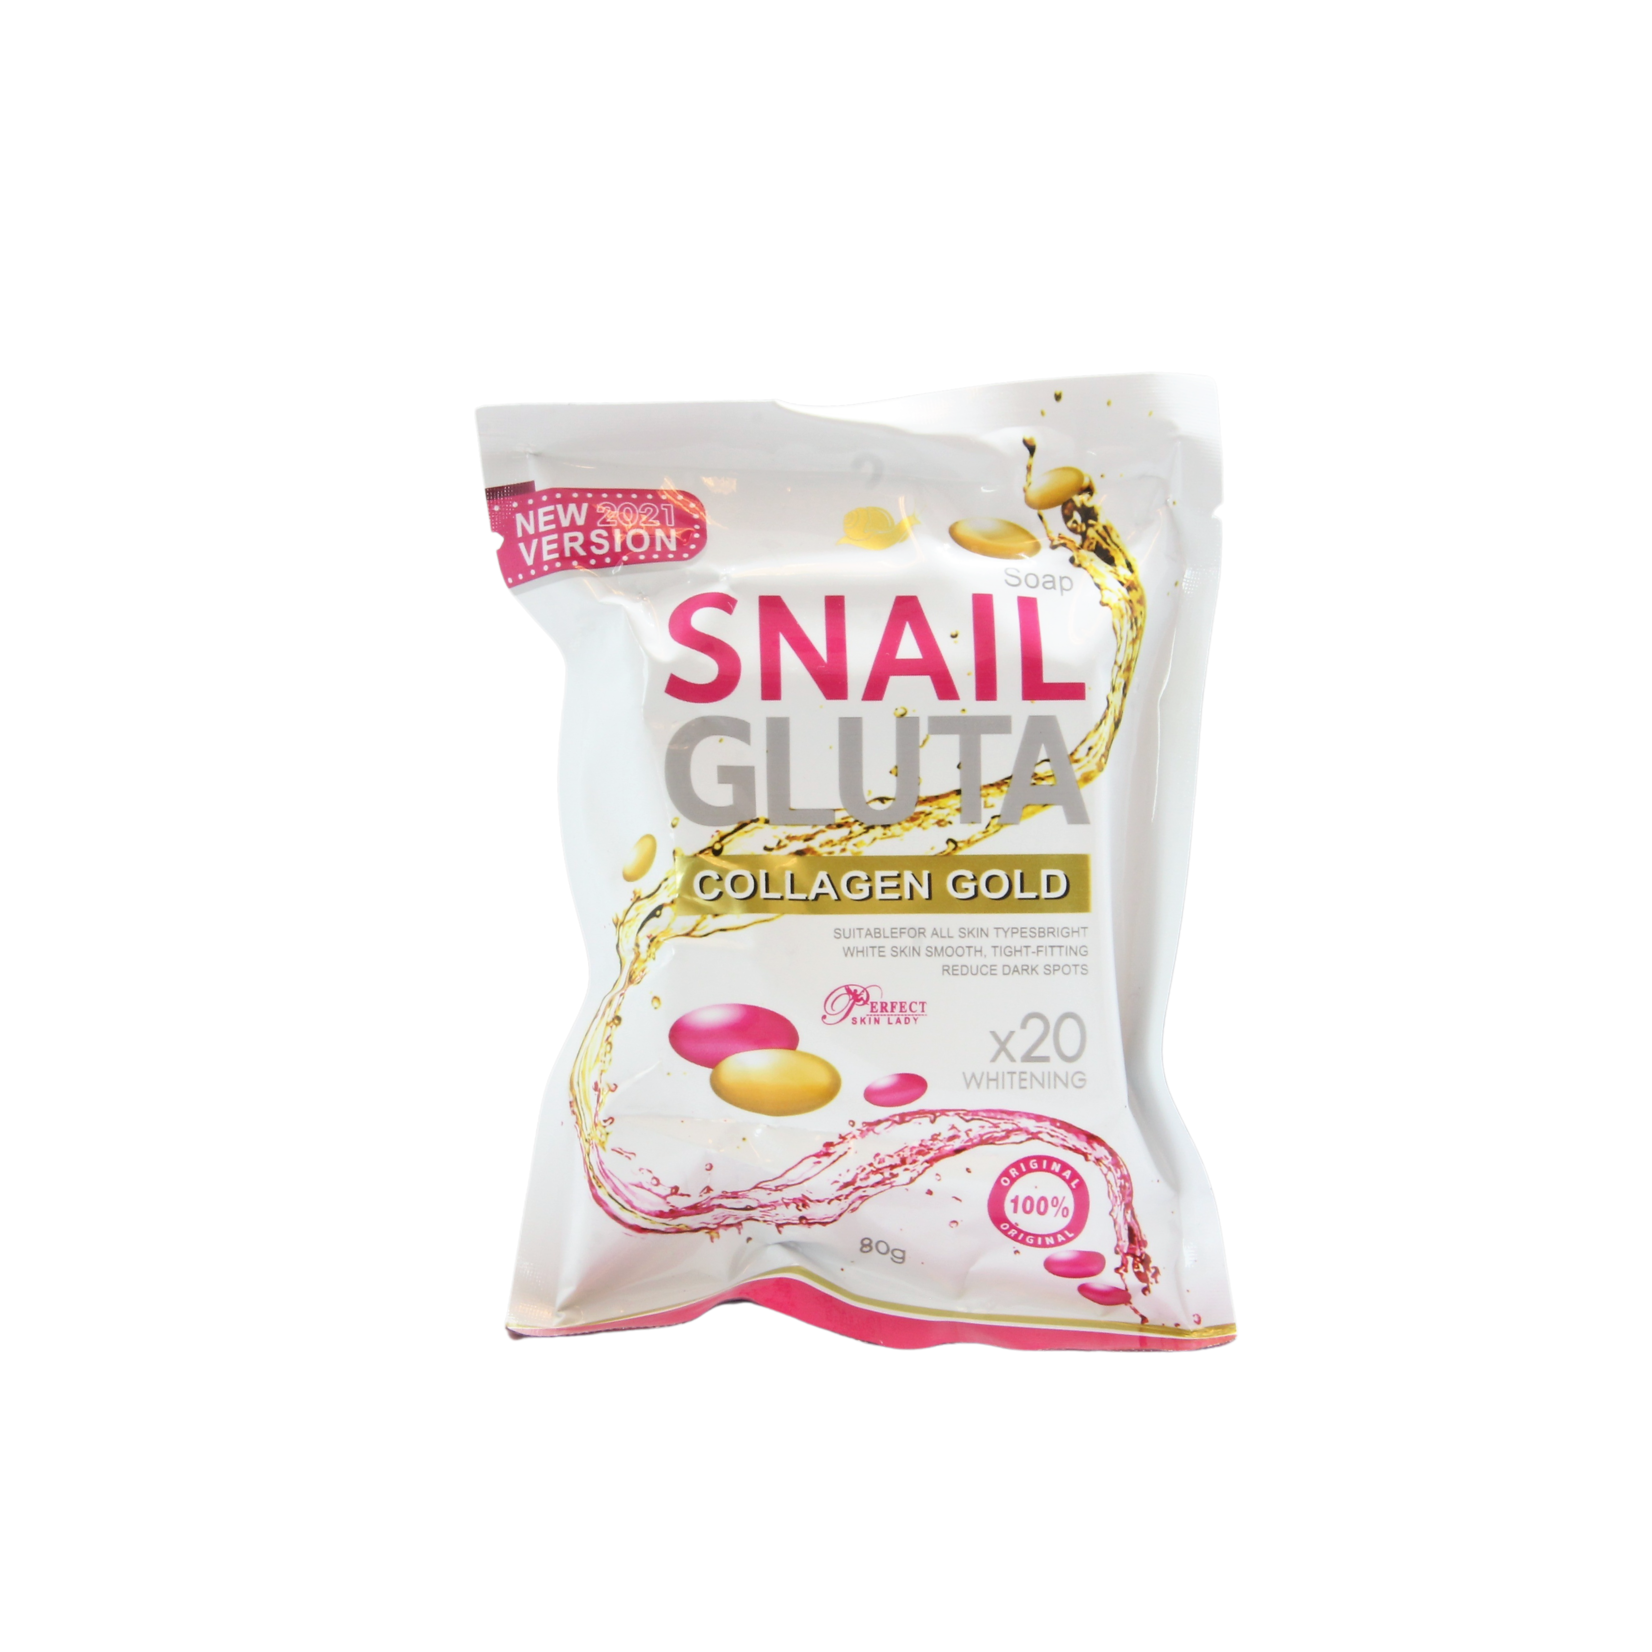 Snail White, laat je stralen als een engel! Snail White soap collagen Gold 80 grams